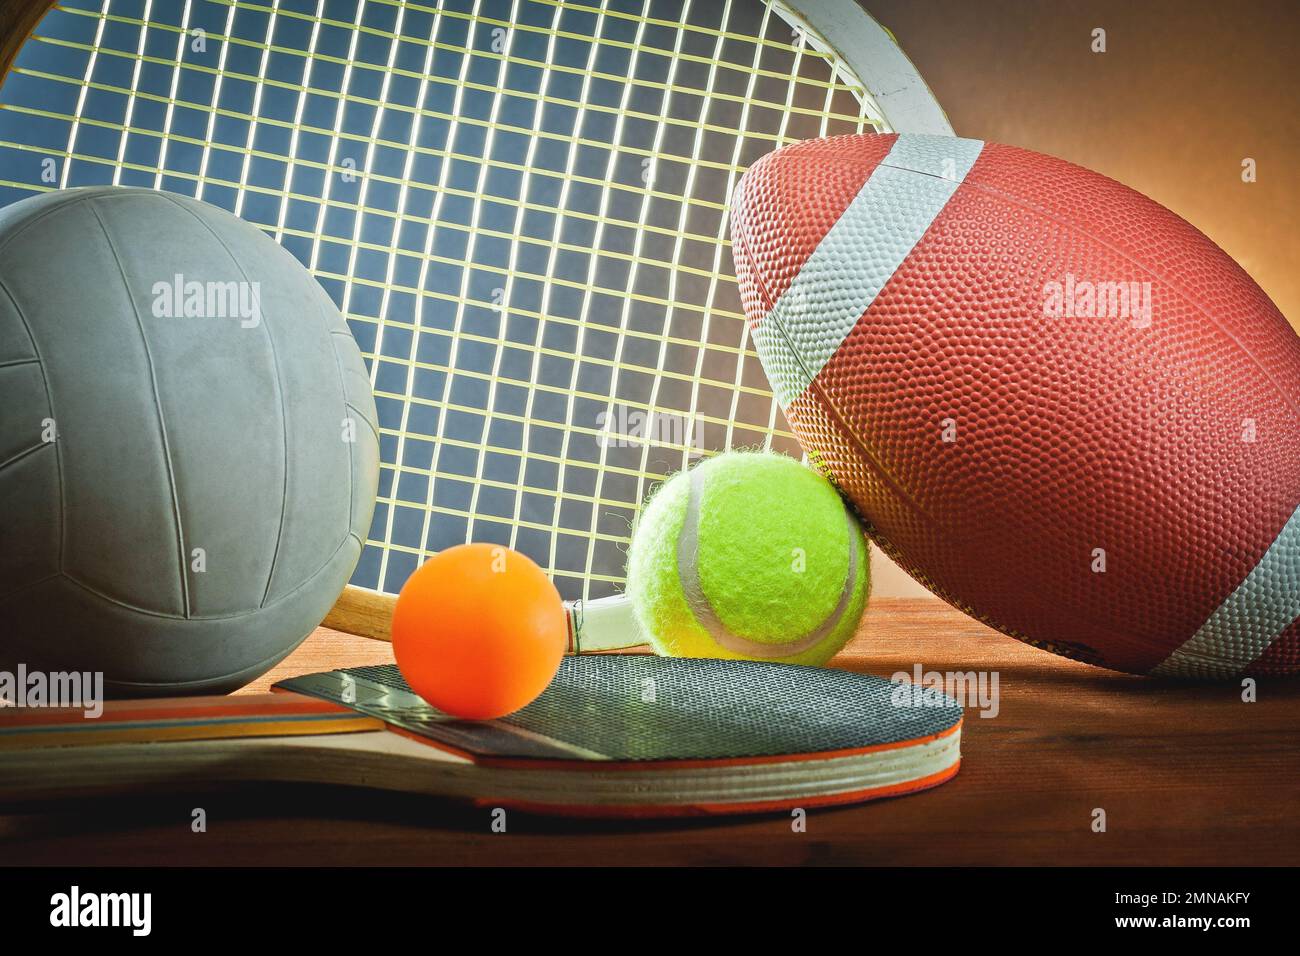 Attrezzature sportive assortite. Tennis, rugby, pallavolo e ping pong Foto Stock